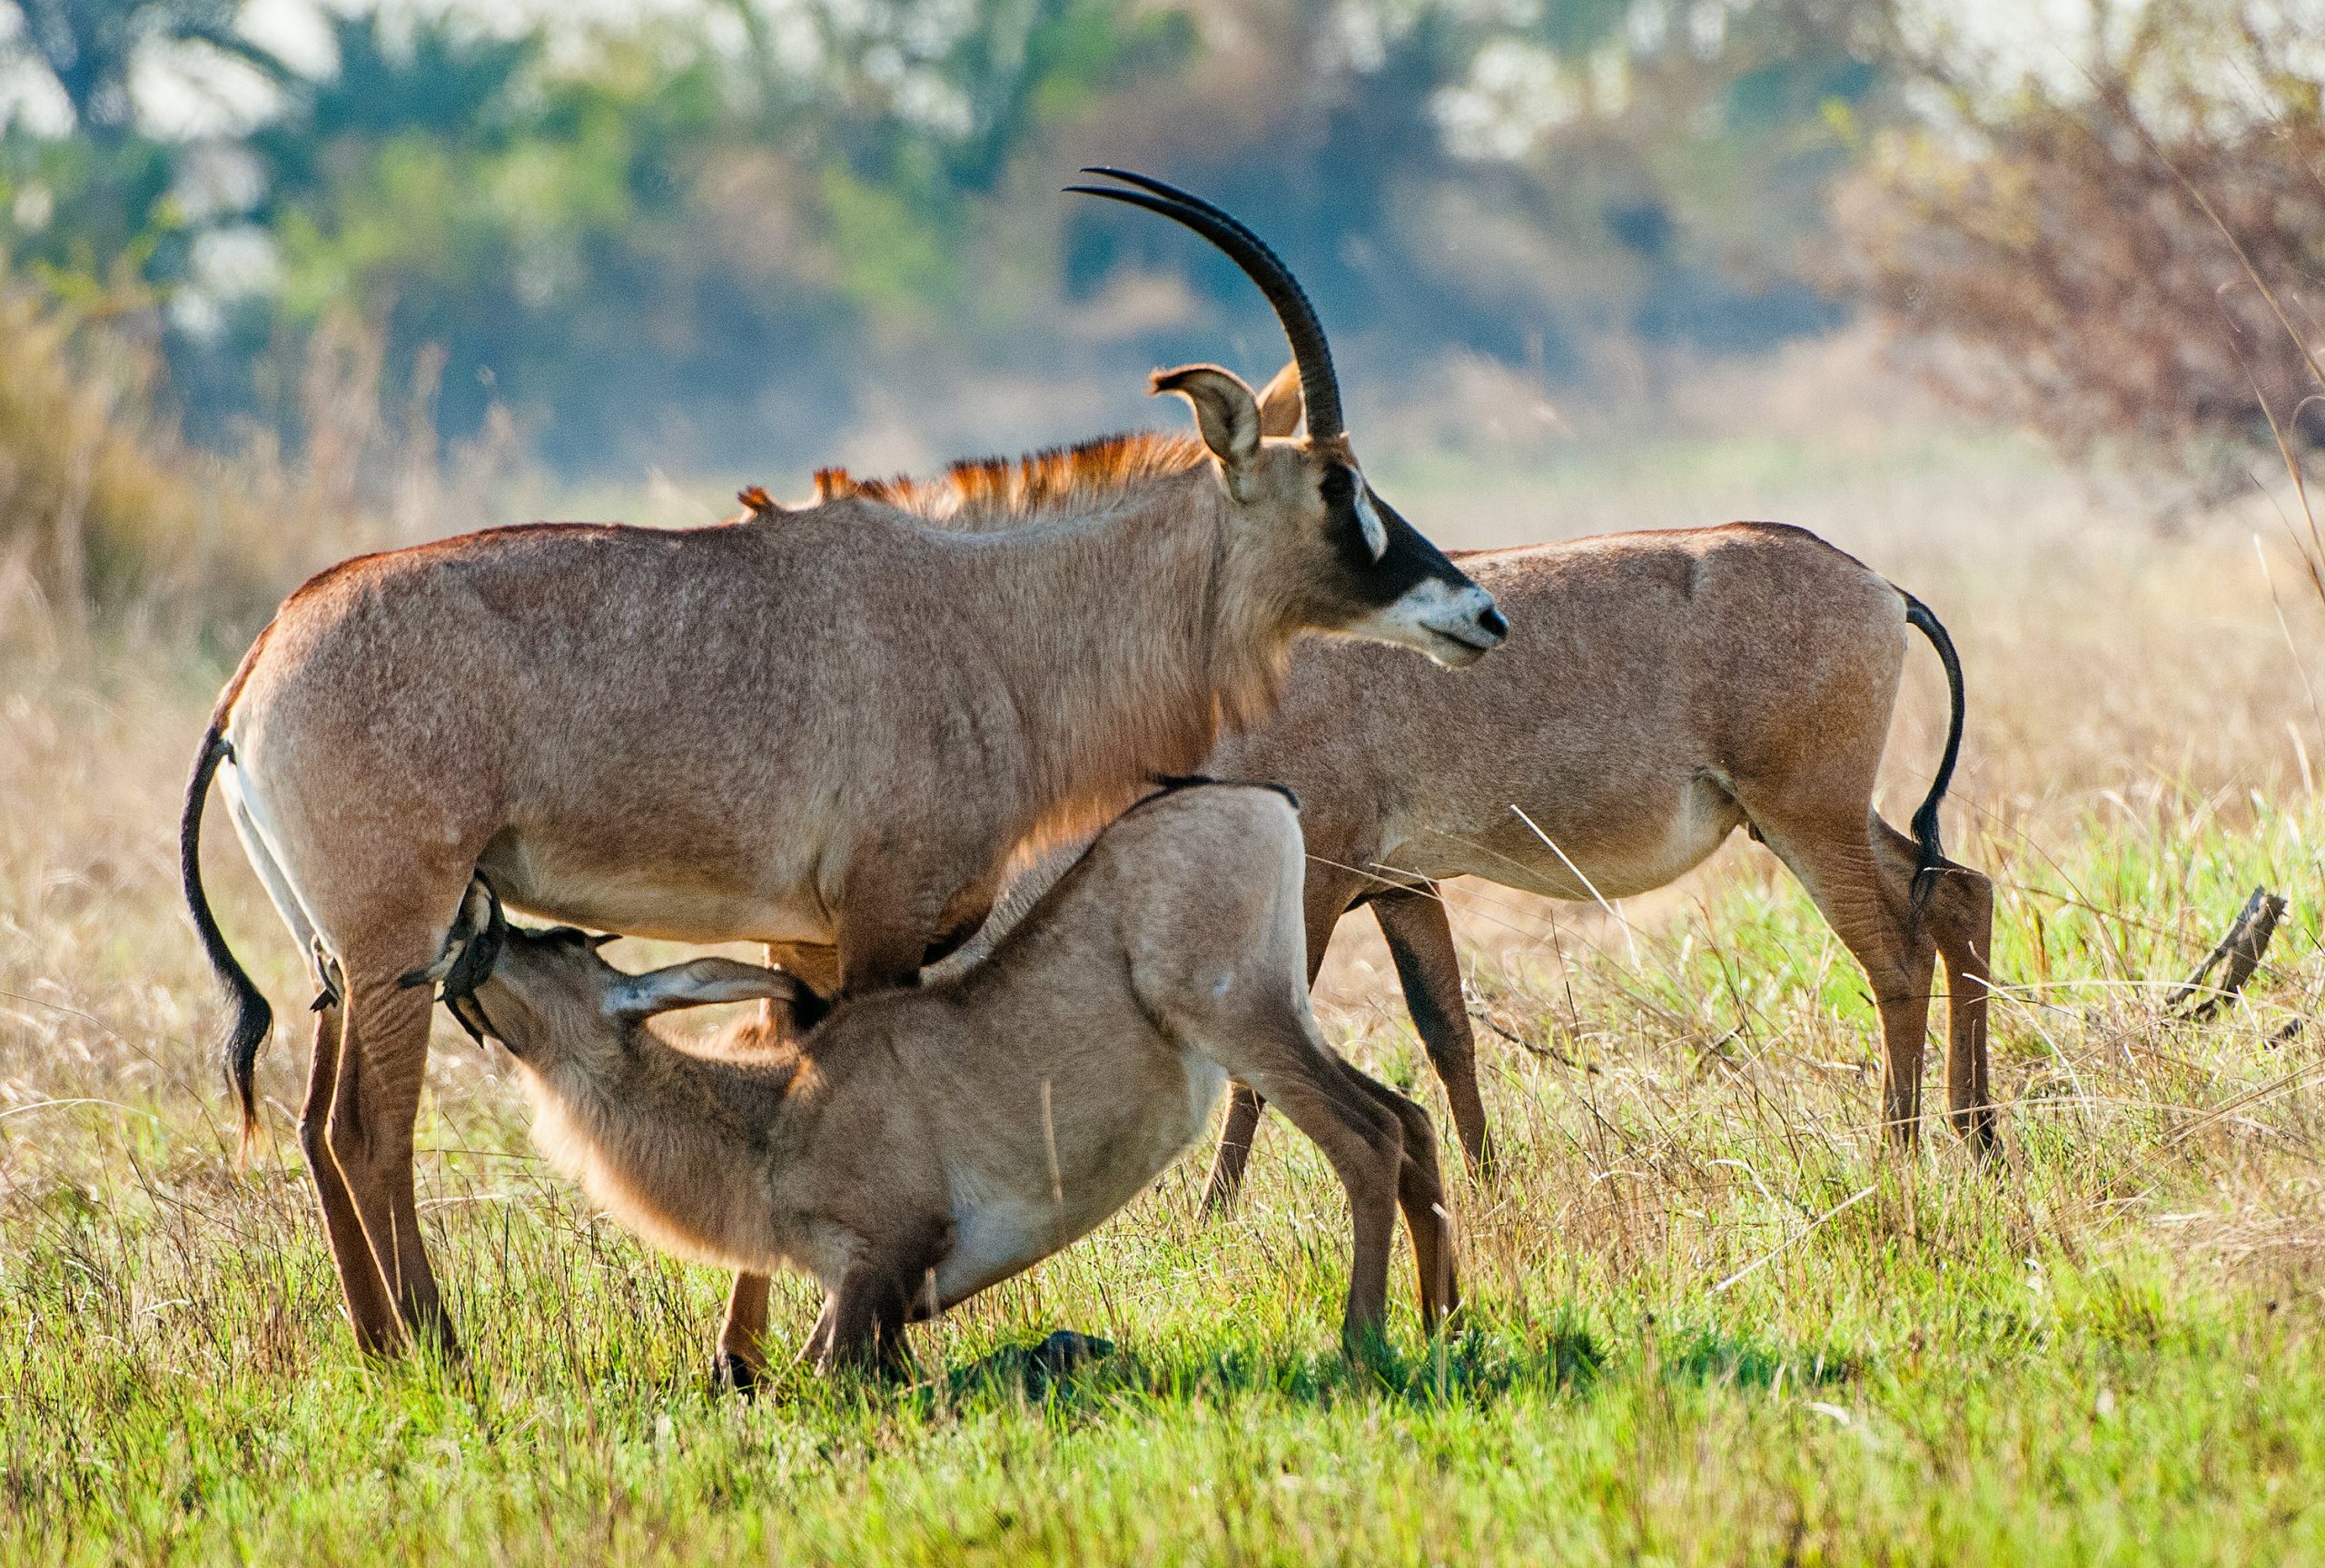 Roan Antelopes at Ruma National Park in Homabay